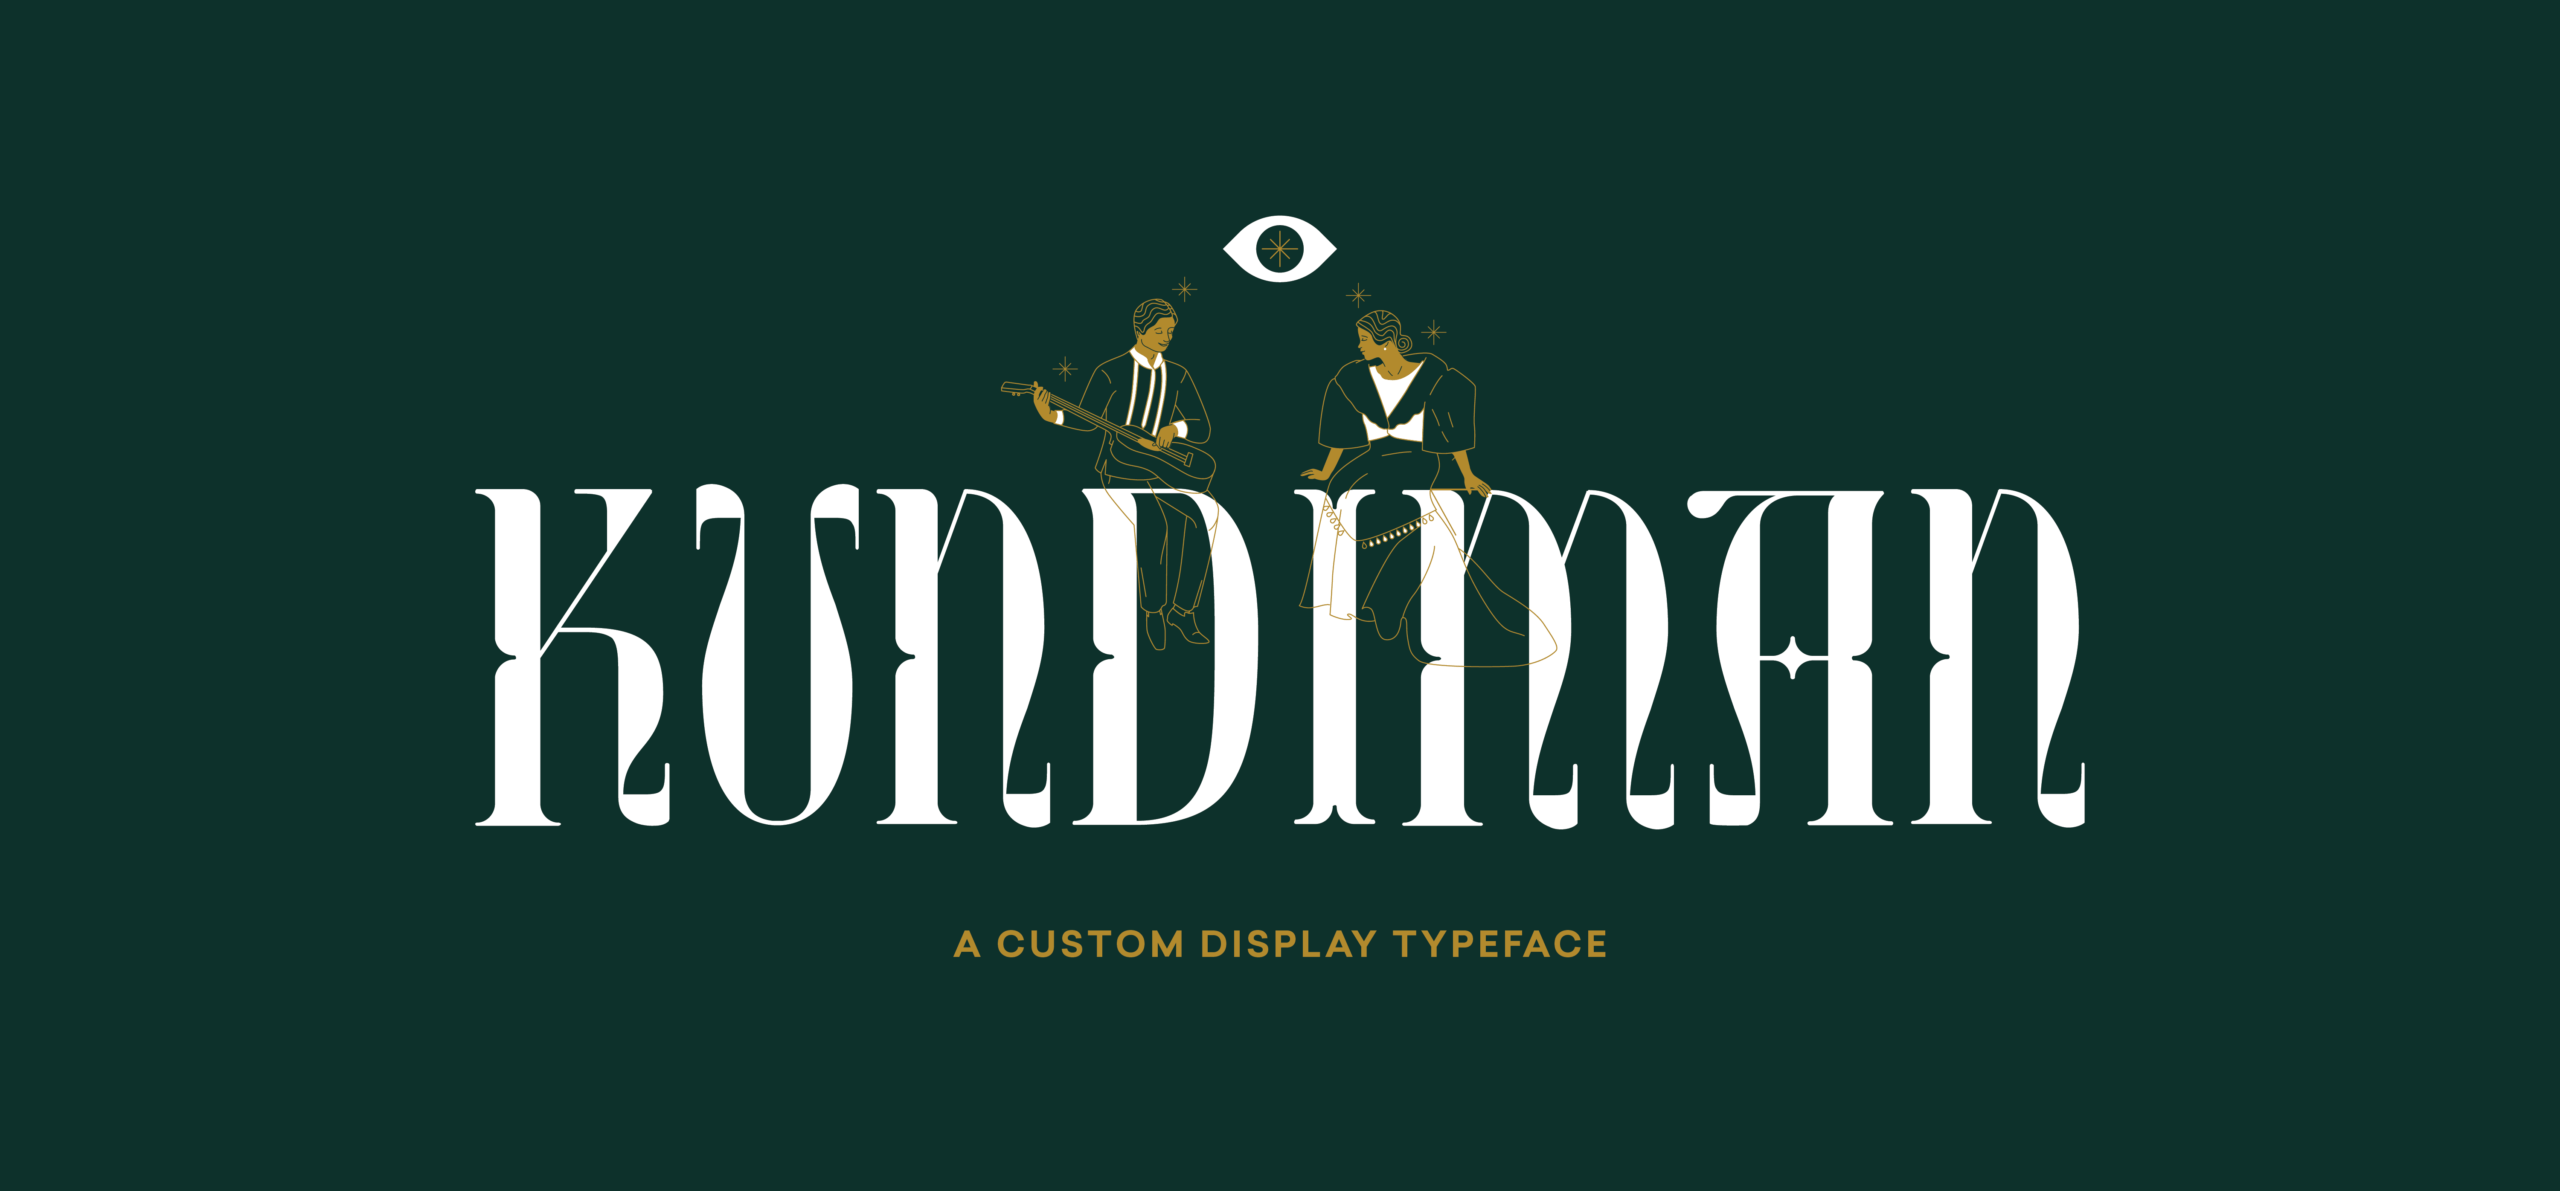 Custom Filipino typeface Kundiman designed by Serious Studio